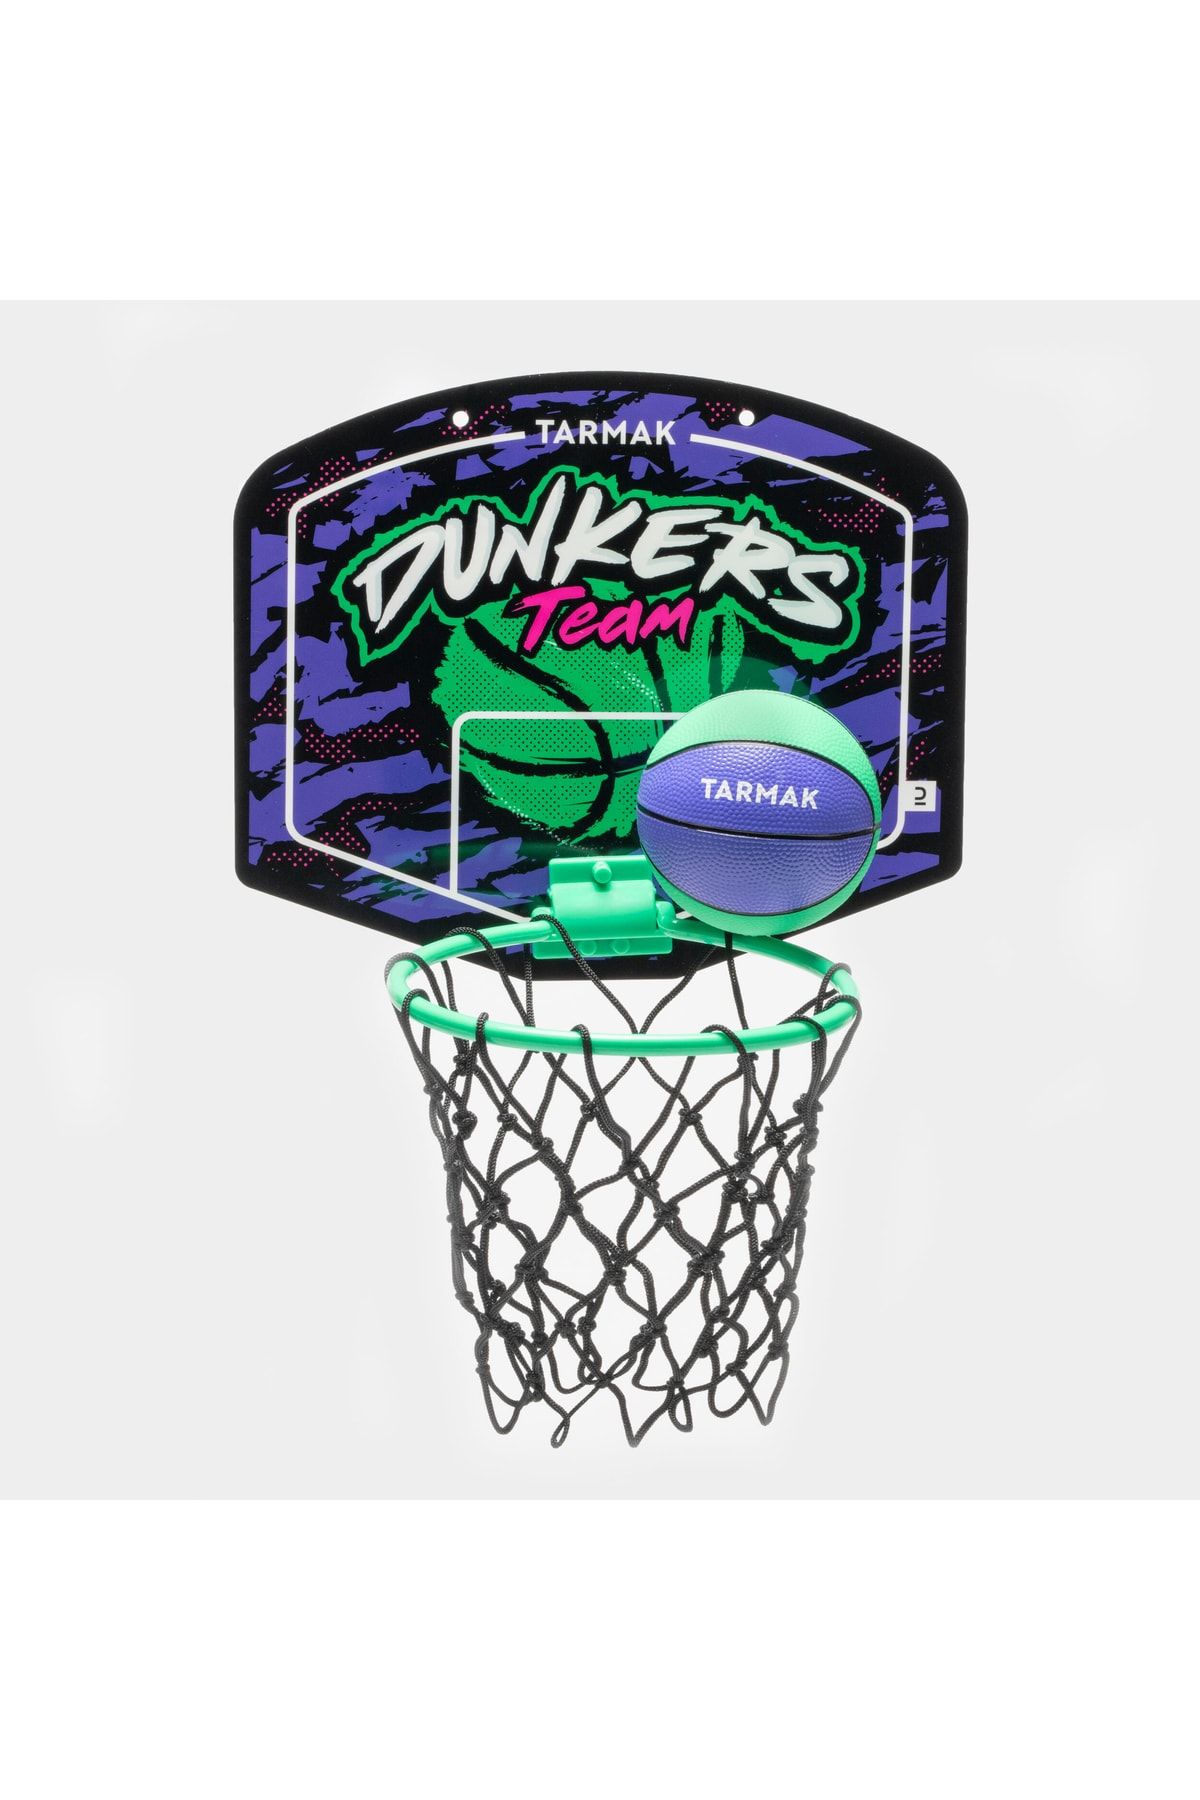 Decathlon Tarmak Çocuk / Yetişkin Mini Basketbol Potası - Turkuaz / Mor - Sk100 Dunkers